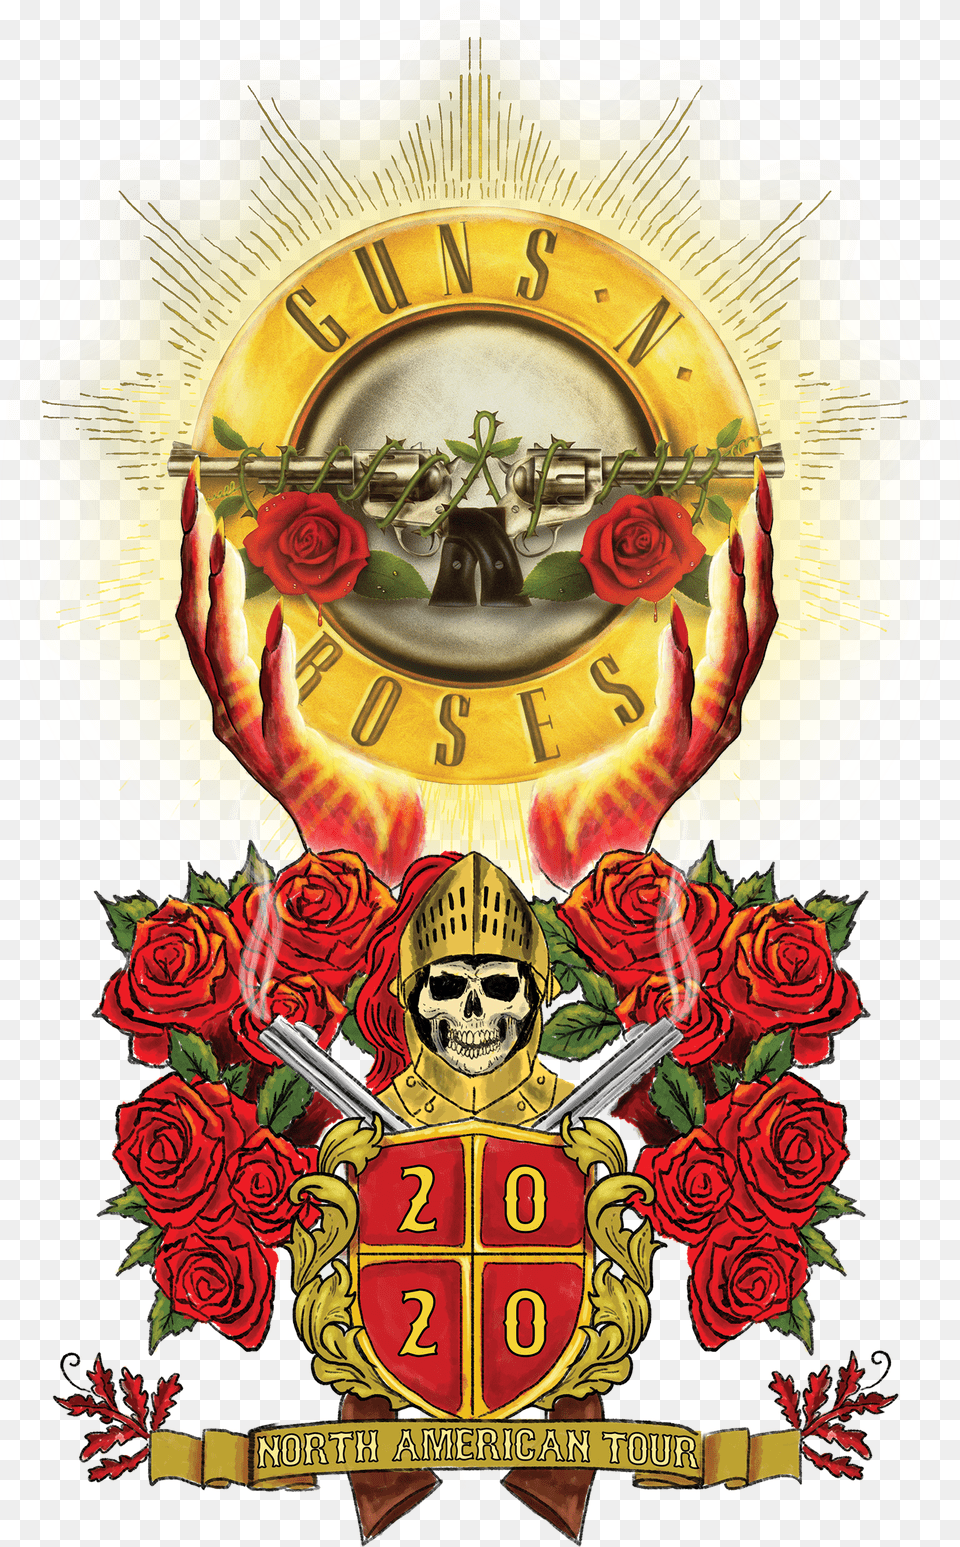 Guns N Roses North American Tour 2020 Free Png Download